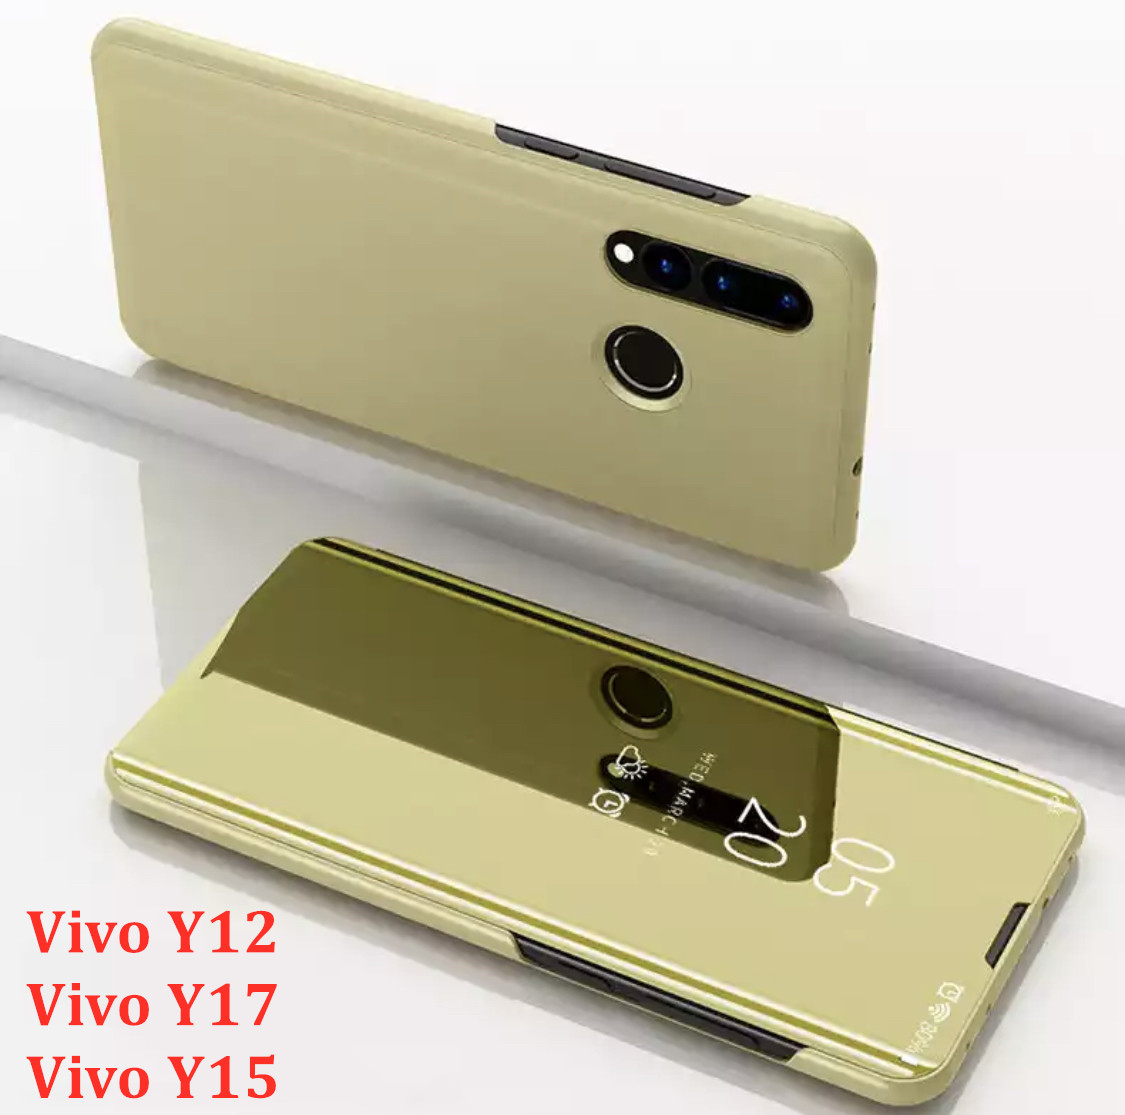 [ส่งจากไทย] Case Vivo Y17 เคสเปิดปิดเงา สำหรับรุ่น Vivo Y17 ฝาพับ กระเป๋า vivo วาย17 Smart Case เคสวีโว่ Y17 เคสฝาเปิดปิดเงา สมาร์ทเคส เคสตั้งได้ Vivo Y17 Flip Mirror Leather Case With Stand Holder เคสมือถือ เคสโทรศัพท์ รับประกันความพอใจ สี ทอง